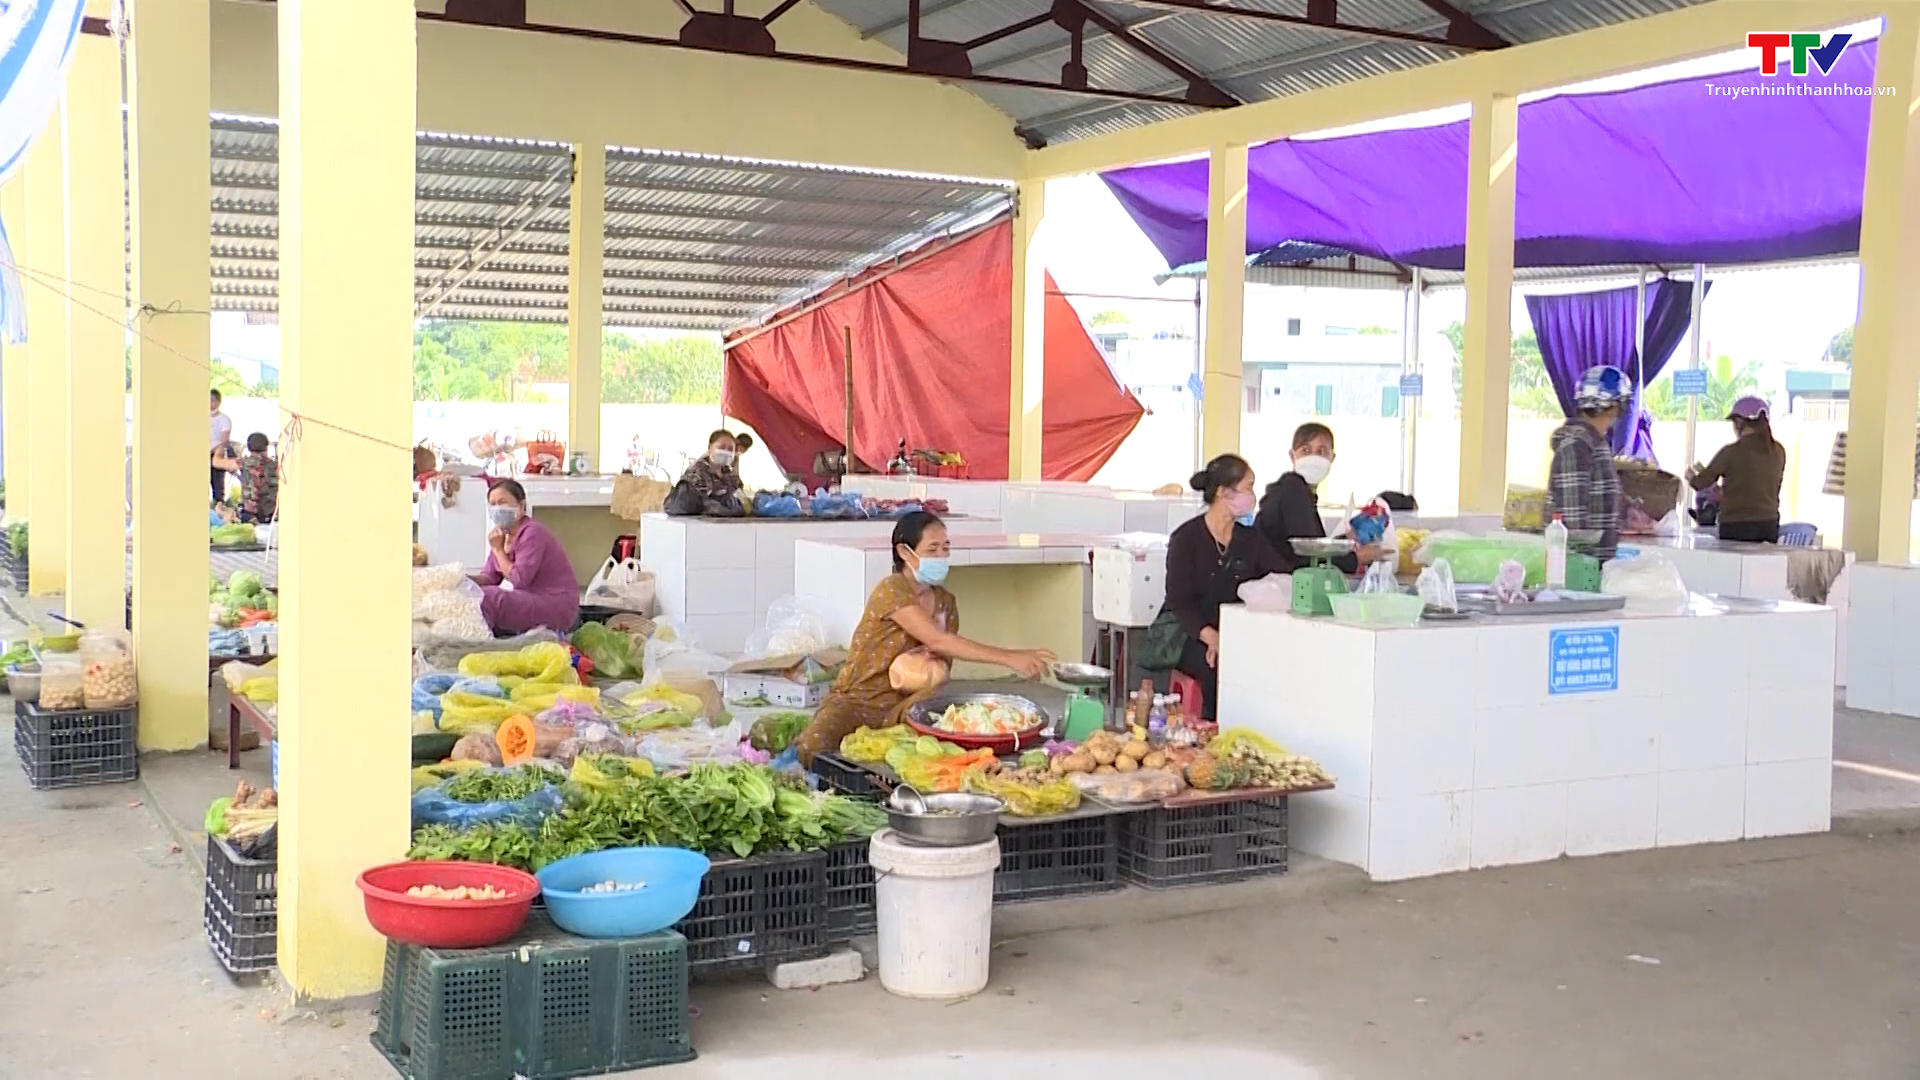 Tỉnh Thanh Hóa có 348 chợ đạt tiêu chuẩn chợ kinh doanh thực phẩm - Ảnh 2.